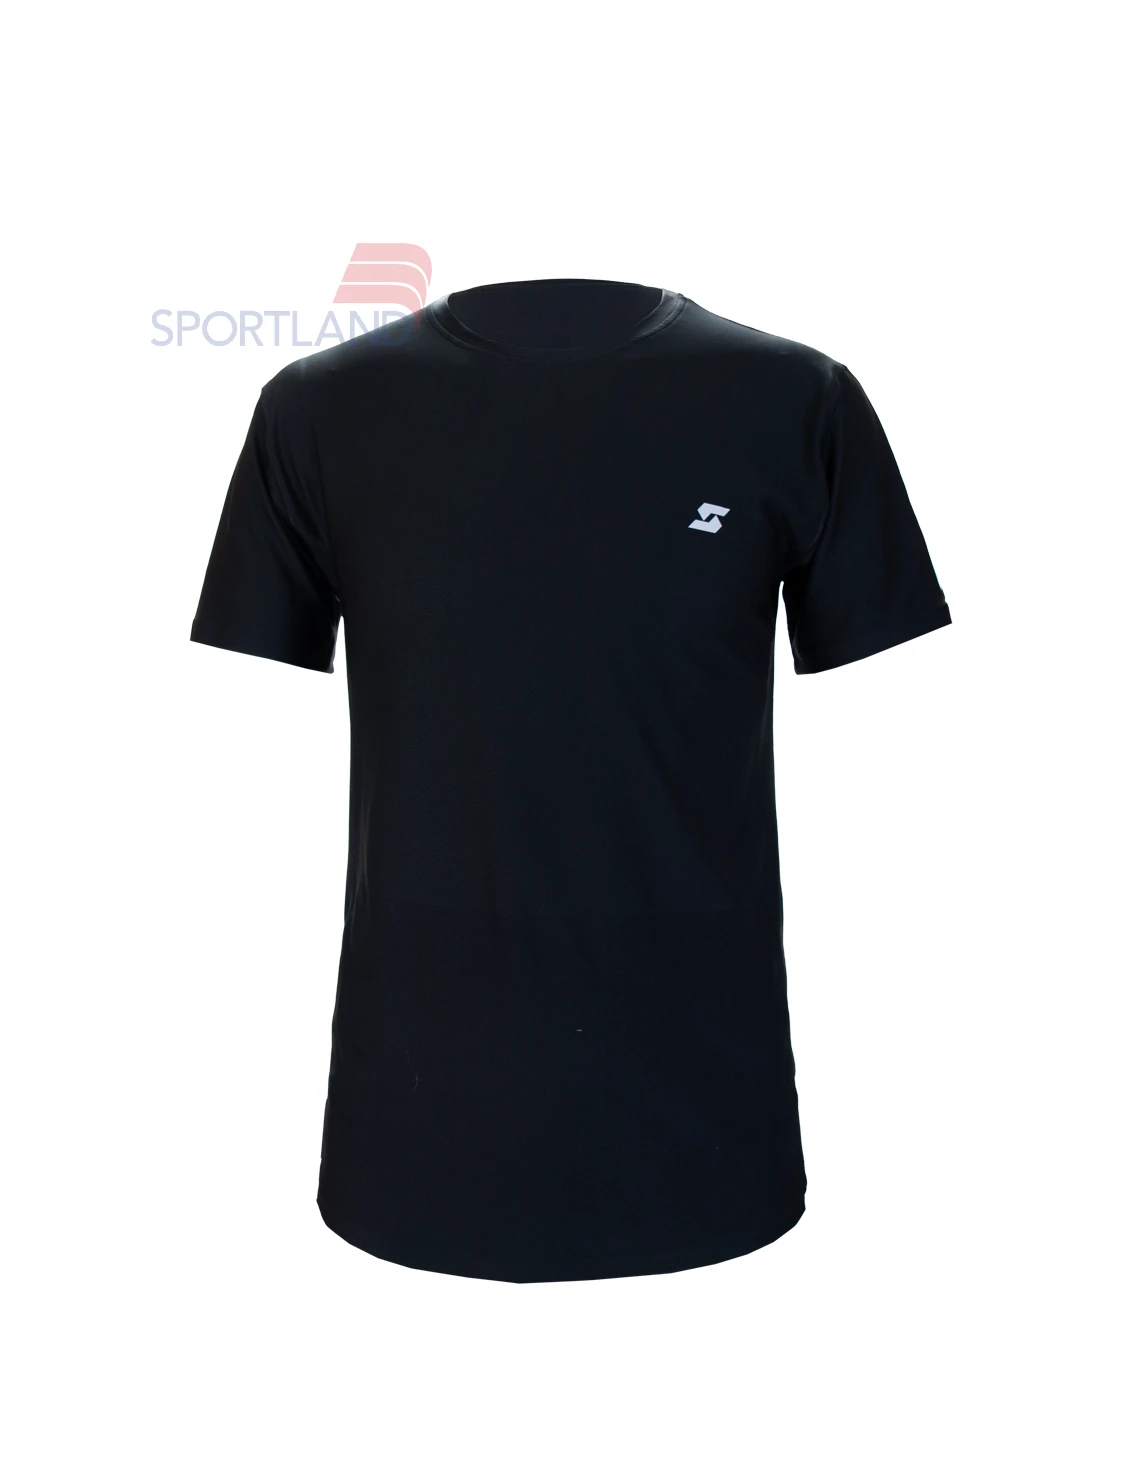 تی شرت ورزشی مردانه اسپورتلند FlexFit M